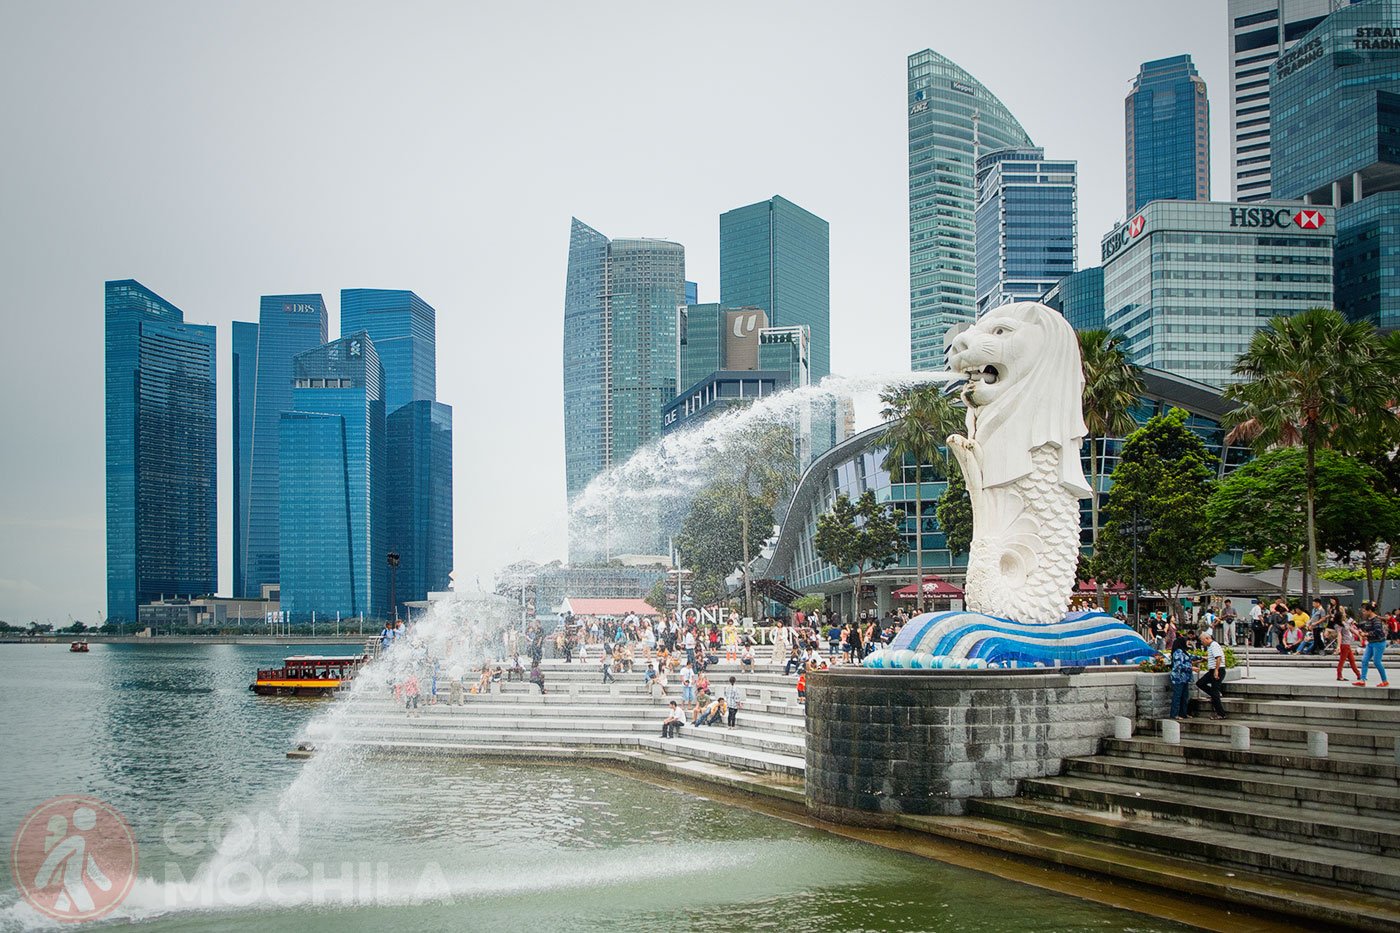 Changi Airport Group, Singapore Airlines y la Junta de Turismo de Singapur relanzaron el Free Singapore Tour después de una pausa de dos años debido a Covid-19. Tres de los recorridos existentes disponibles en tours como: City Sights Tour, Heritage Tour y Jewel Tour.